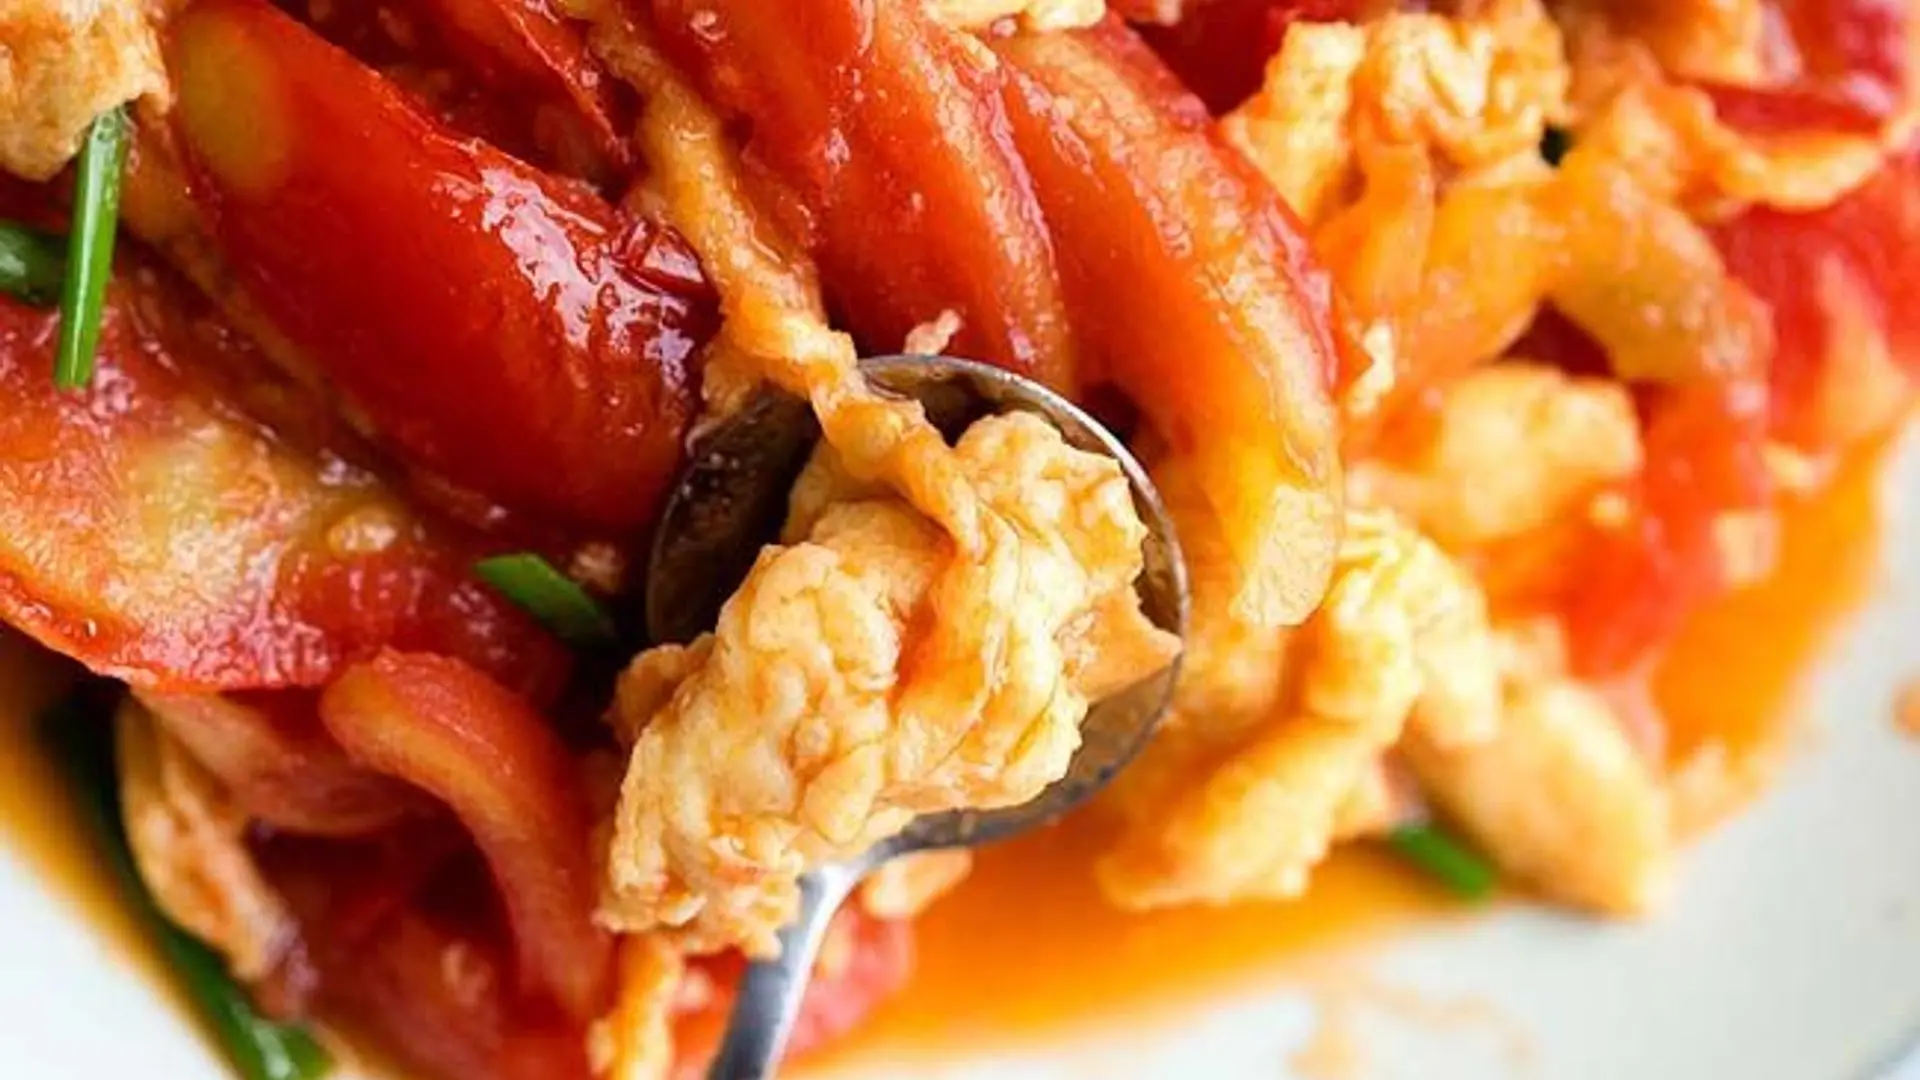 Món trứng cá thu sốt cà chua có thể kèm theo những món đồ ăn khác để tăng tính phong phú và đa dạng?
